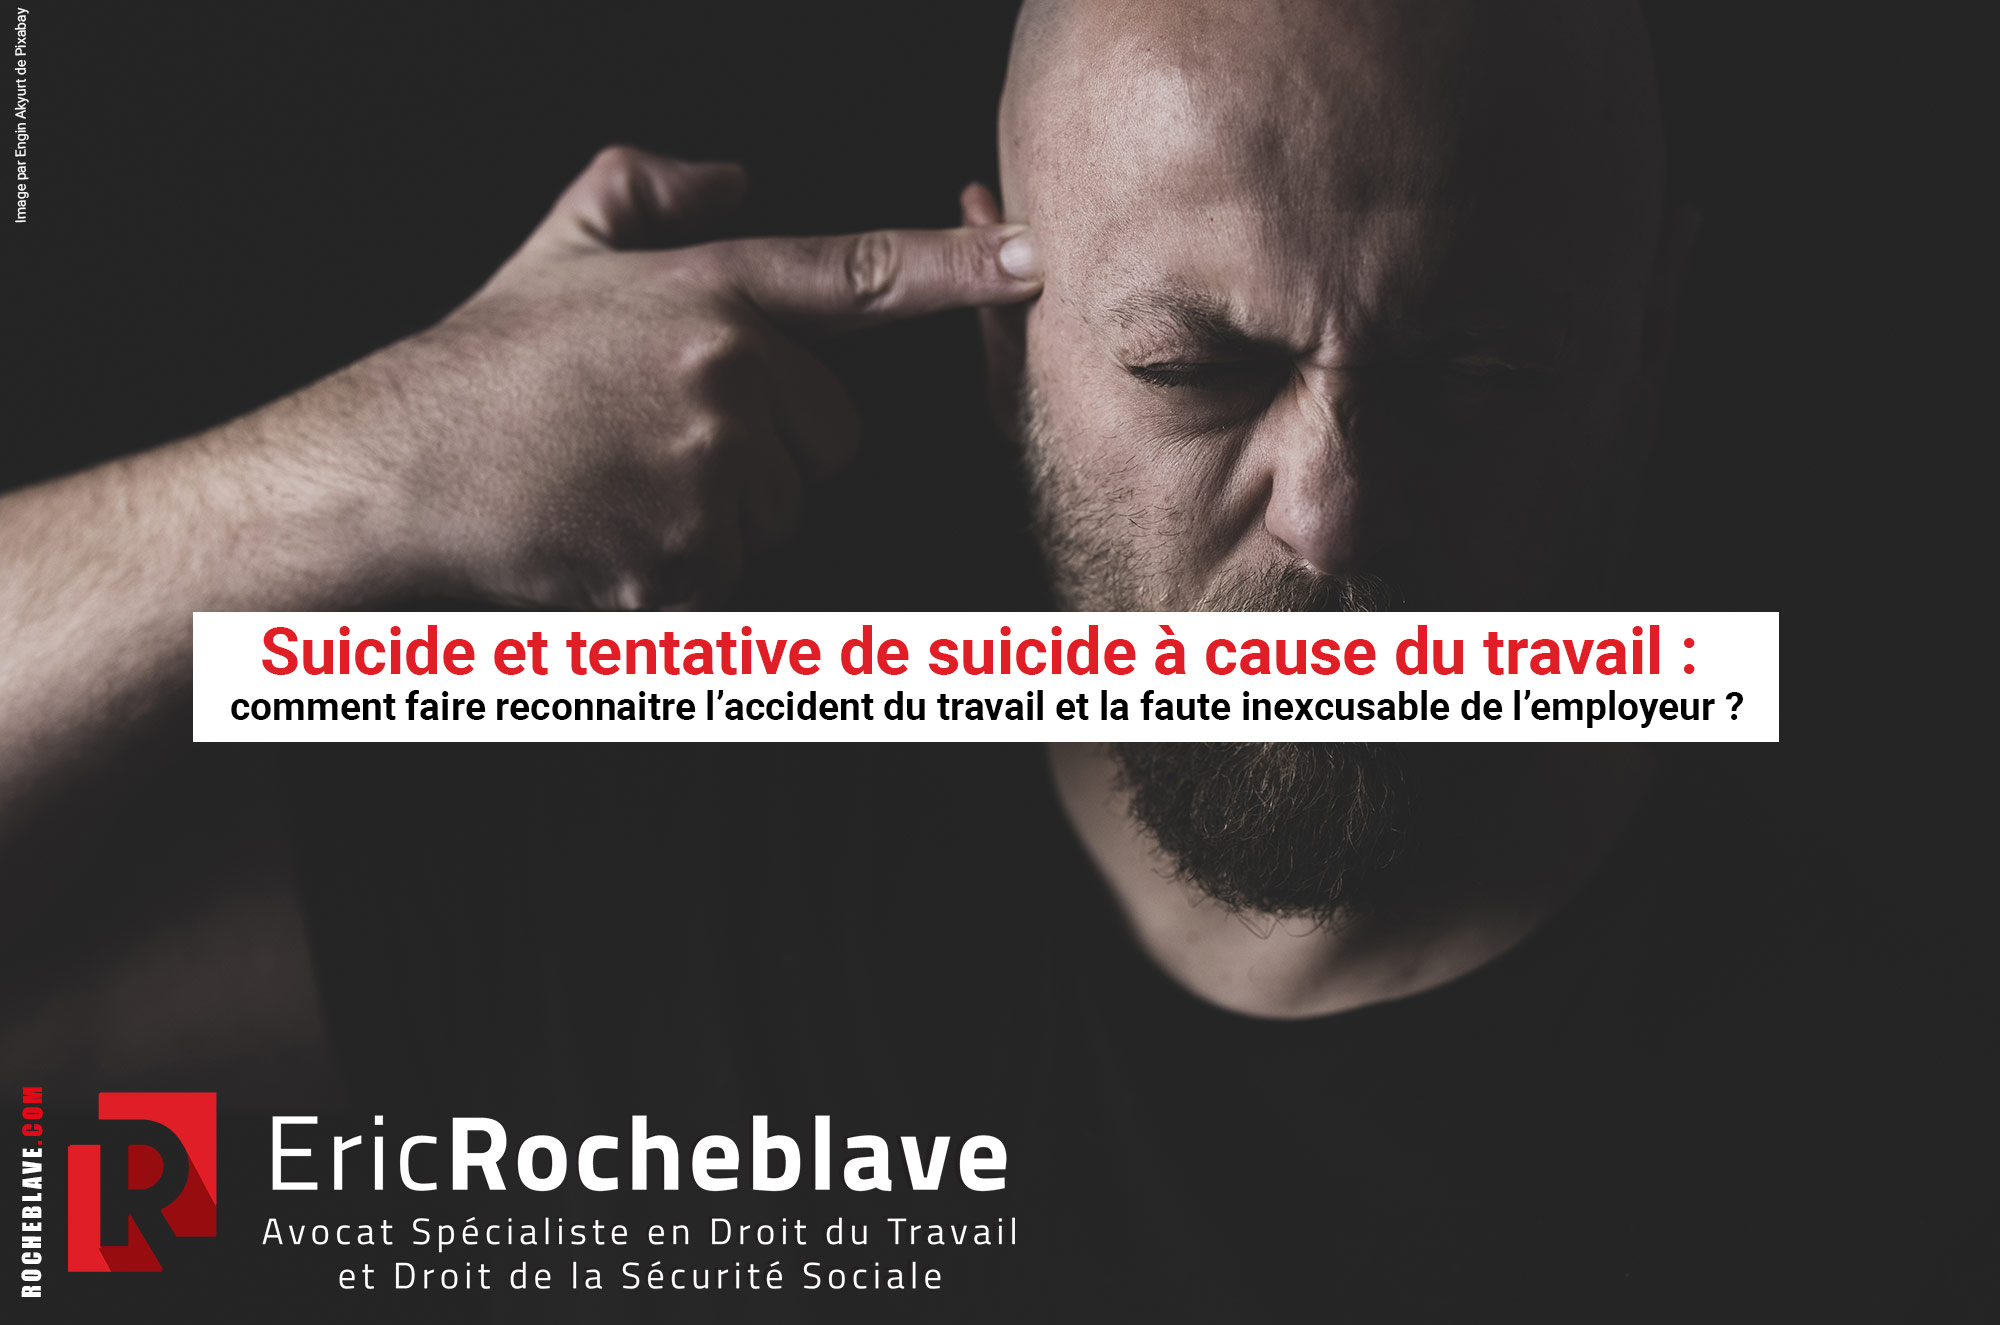 Suicide et tentative de suicide à cause du travail : comment faire reconnaitre l’accident du travail et la faute inexcusable de l’employeur ?